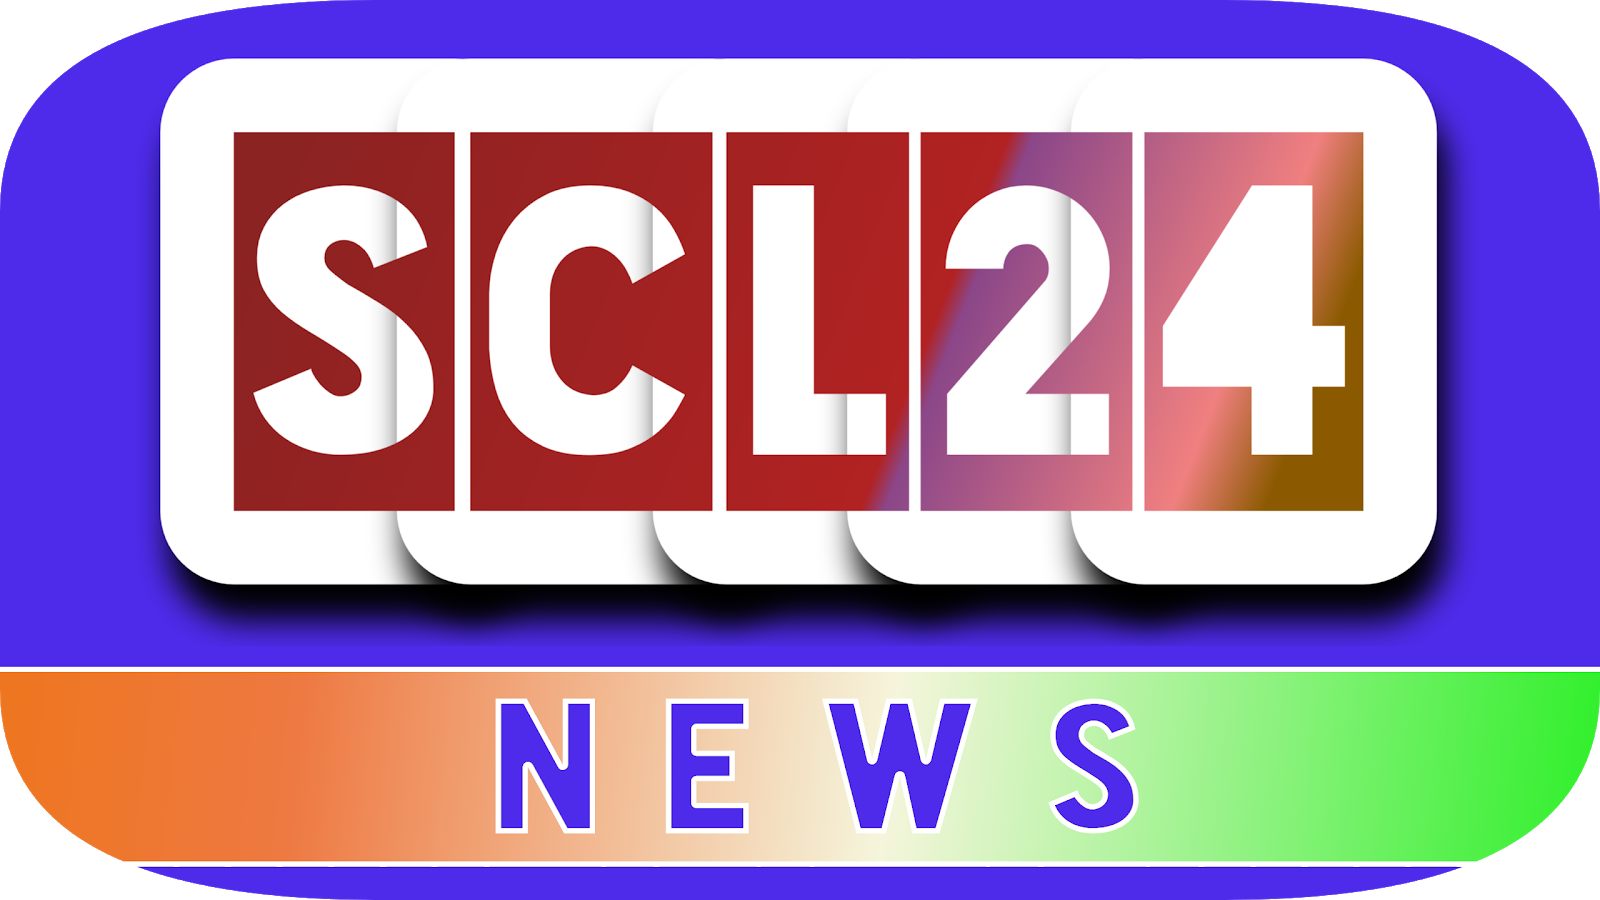 SCL24 NEWS